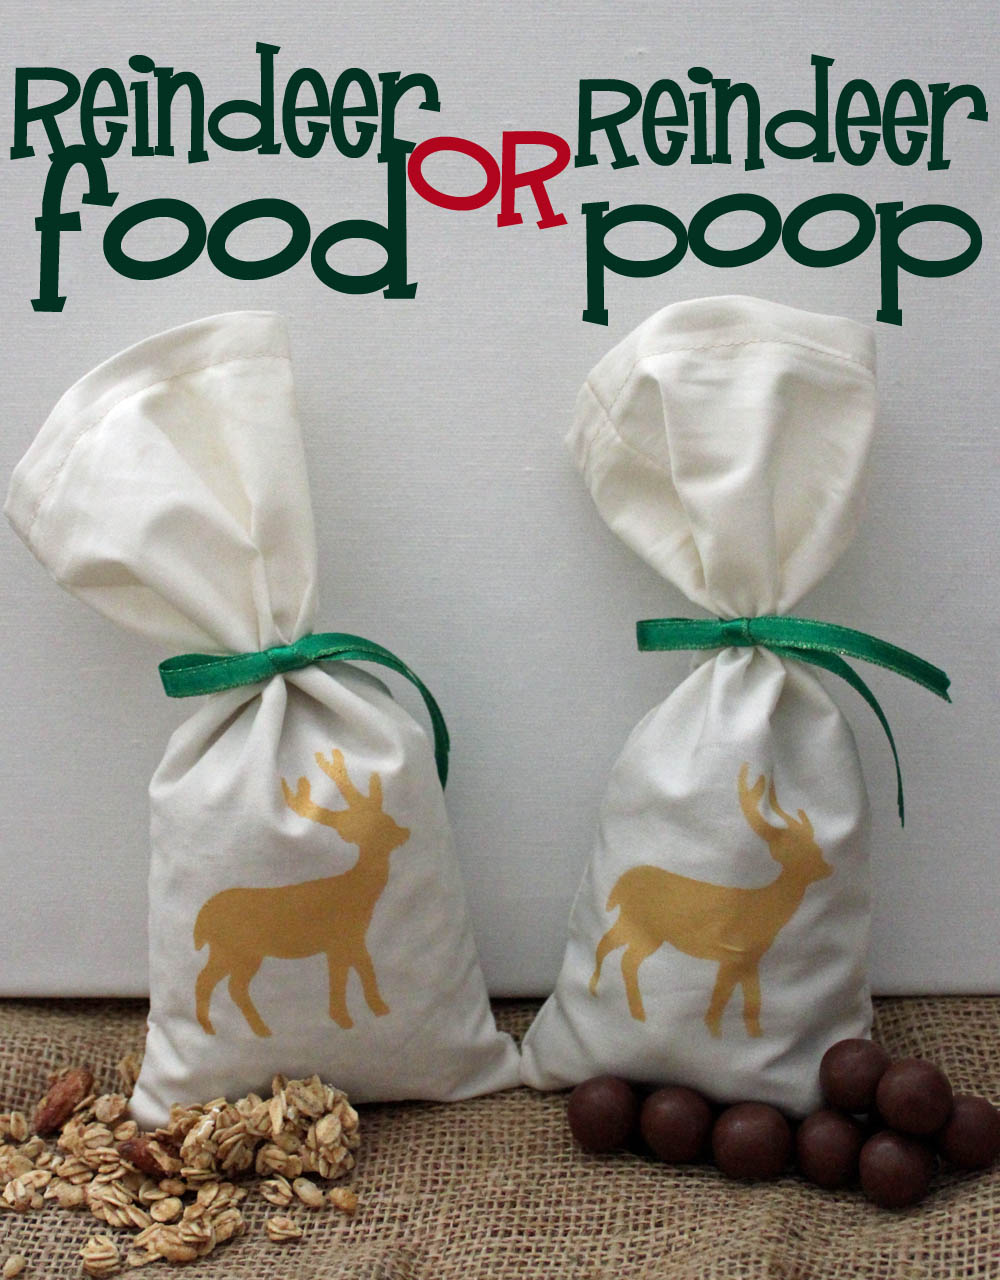 reindeer food or reindeer poop